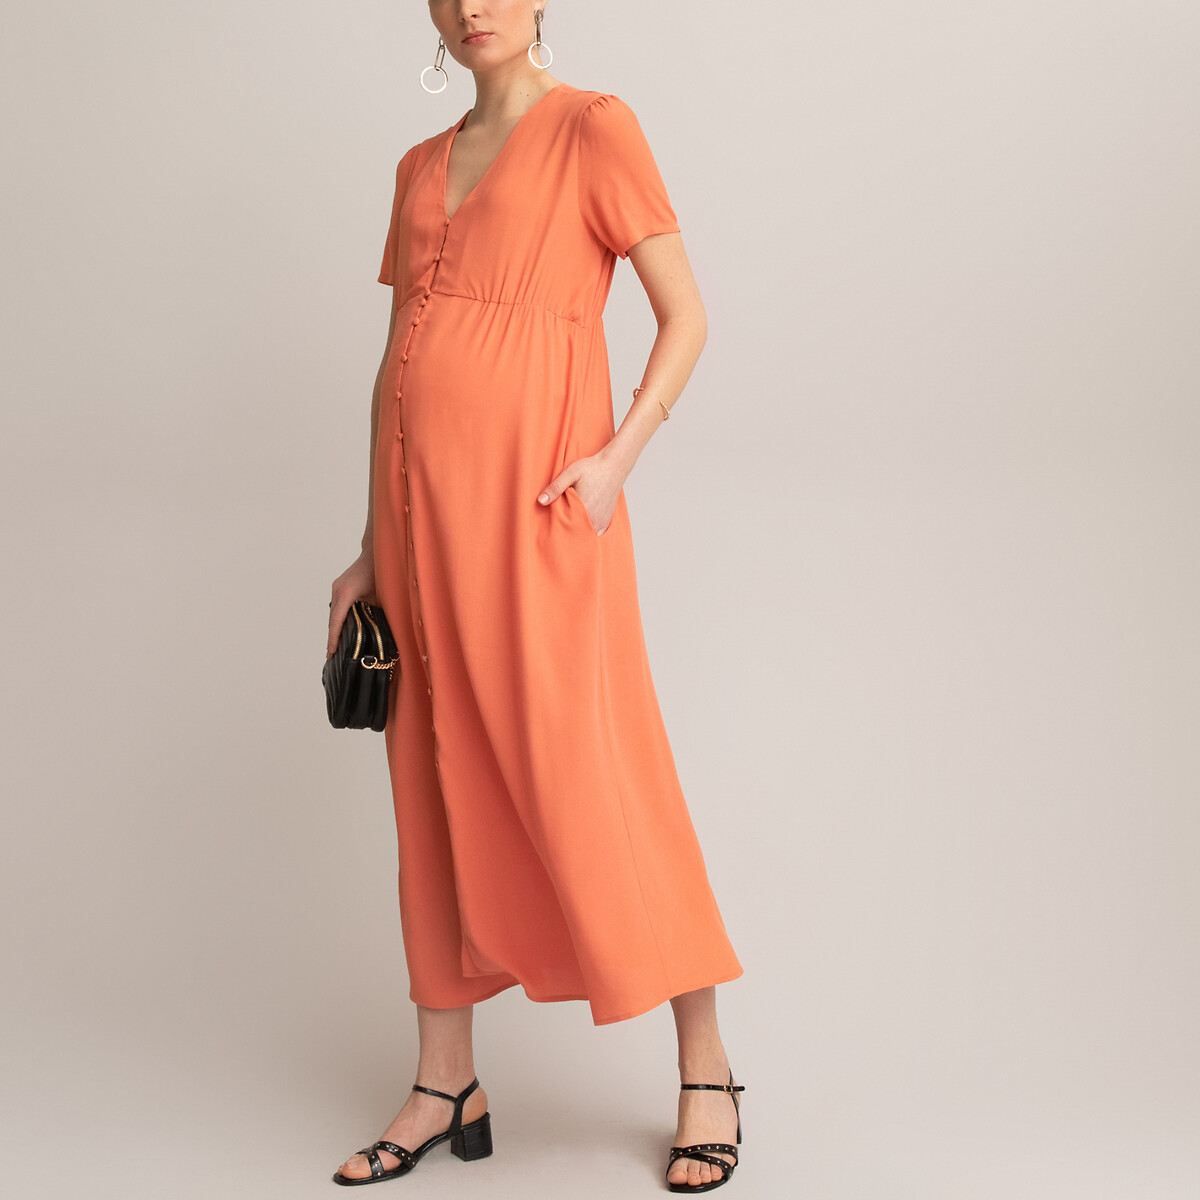 Платье LaRedoute Для периода беременности длинное вырез с короткими рукавами 36 (FR) - 42 (RUS) оранжевый, размер 36 (FR) - 42 (RUS) Для периода беременности длинное вырез с короткими рукавами 36 (FR) - 42 (RUS) оранжевый - фото 1